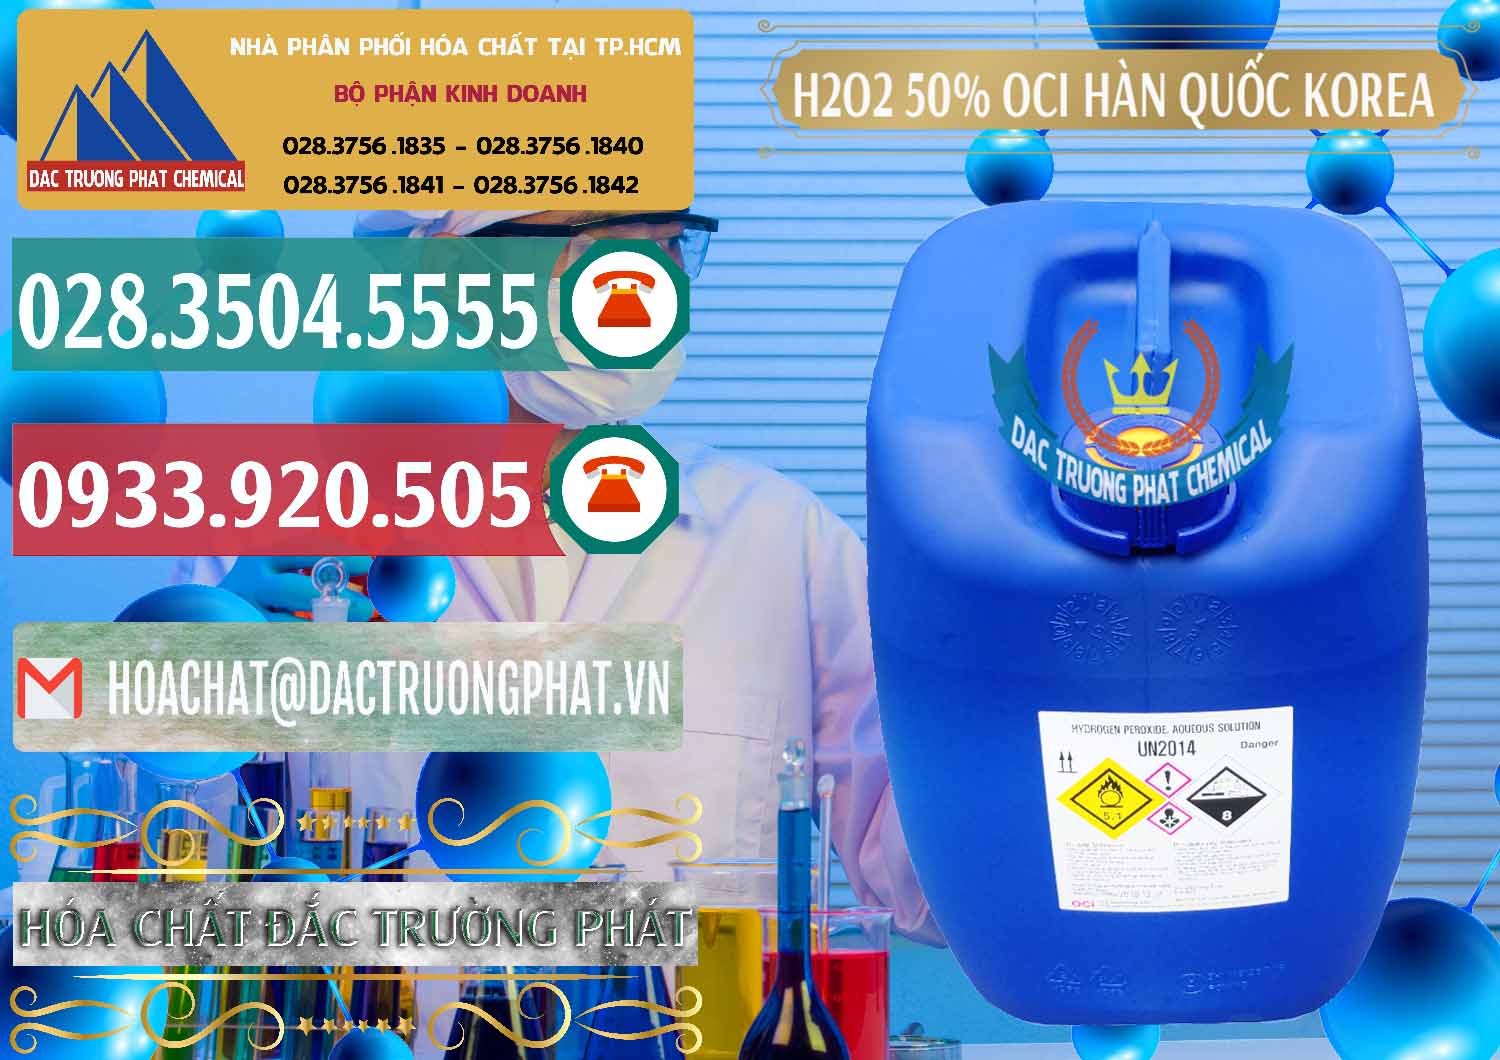 Nơi chuyên bán và phân phối H2O2 - Hydrogen Peroxide 50% OCI Hàn Quốc Korea - 0075 - Cty chuyên bán và cung cấp hóa chất tại TP.HCM - muabanhoachat.vn